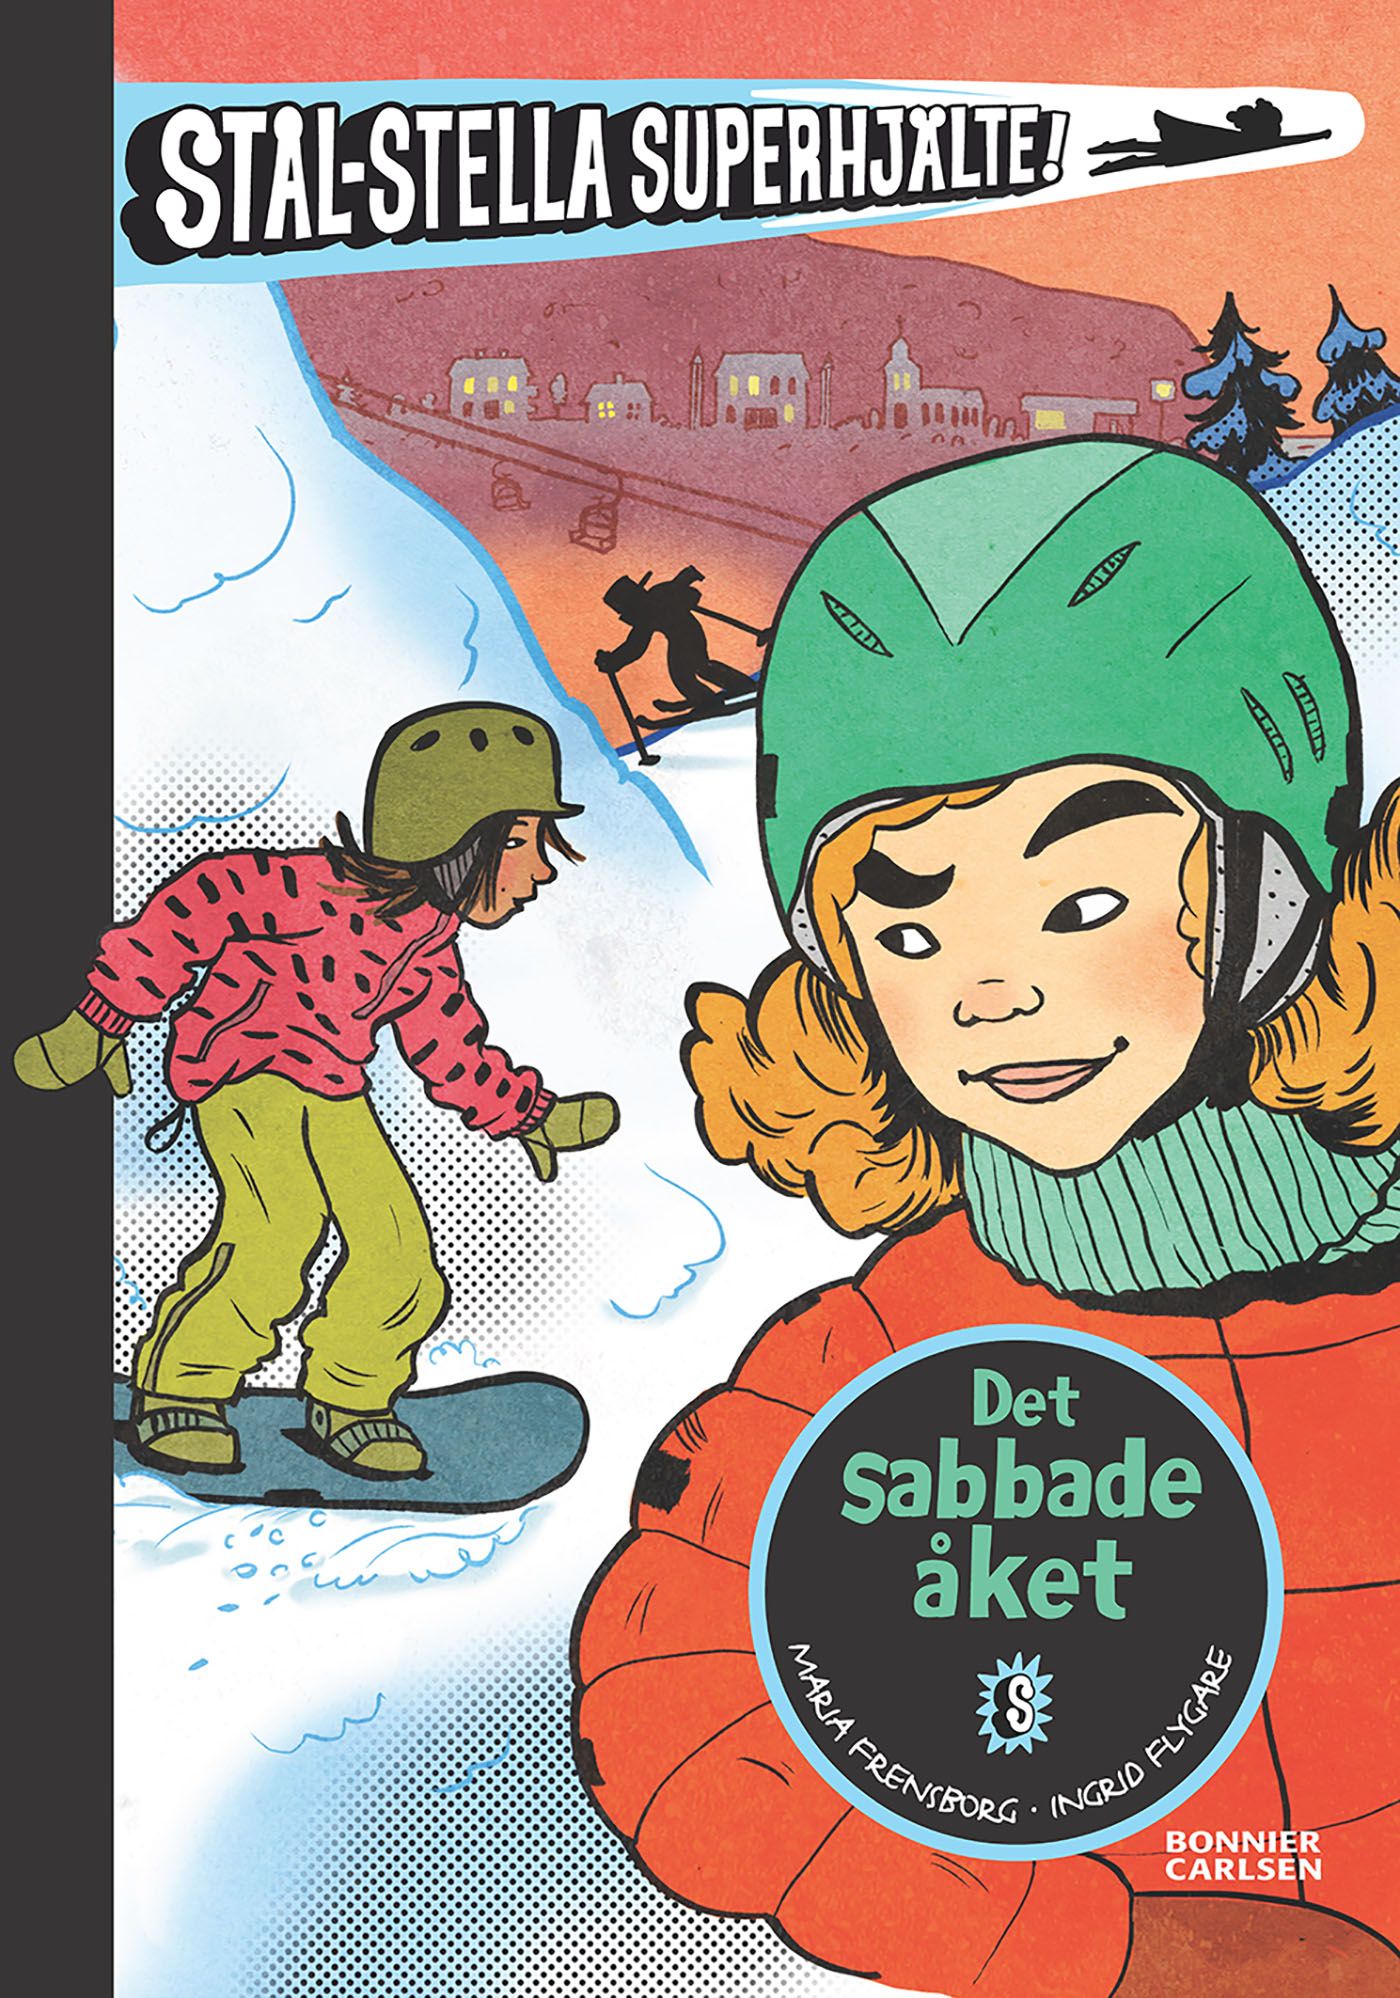 Det sabbade åket, e-bok av Maria Frensborg